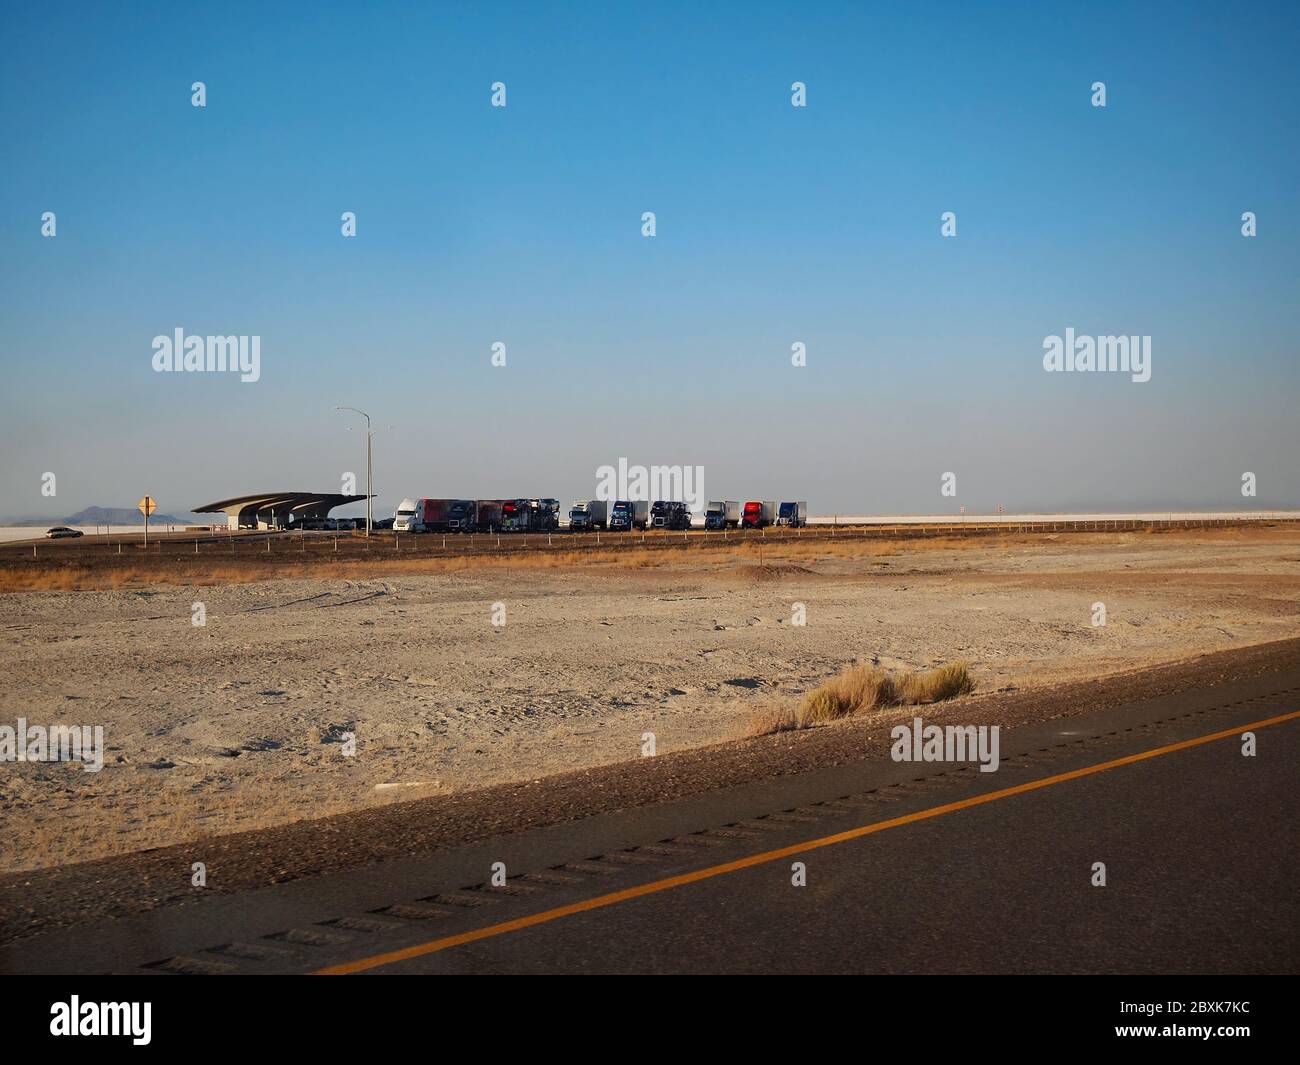 WENDOVER, UTAH - 23 LUGLIO 2018: Una lunga fila di semirimorchi di trattori parcheggiati presso una fermata di sosta dell'autostrada nelle Saline Bonneville dello Utah occidentale. Foto Stock